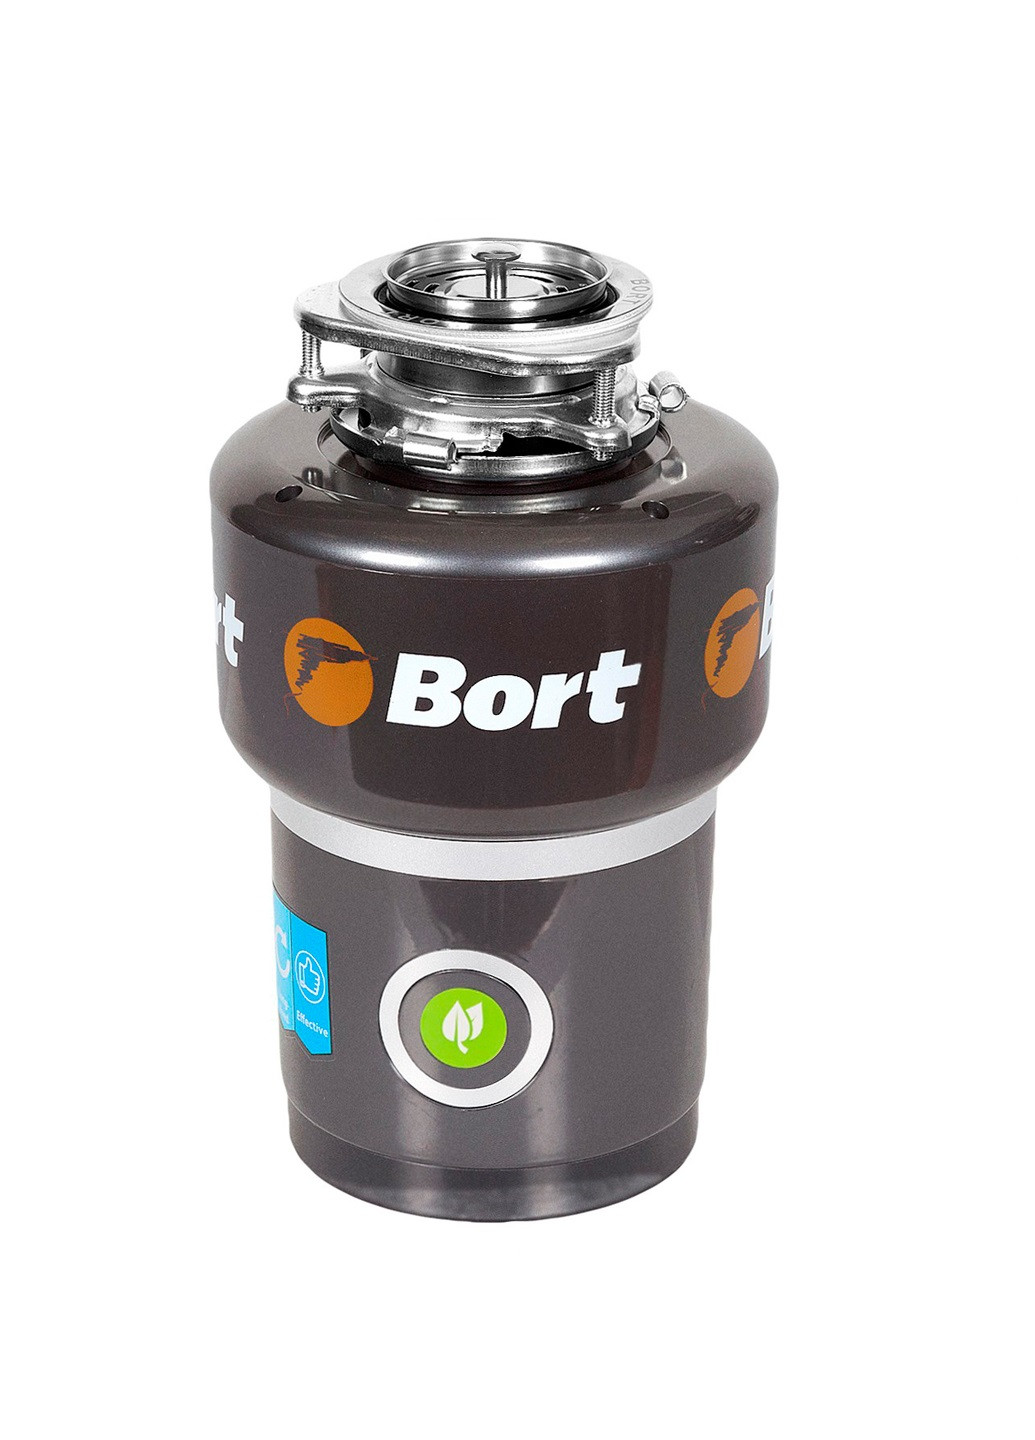 Измельчитель пищевых отходов Bort titan max power (fullcontrol) (213450764)